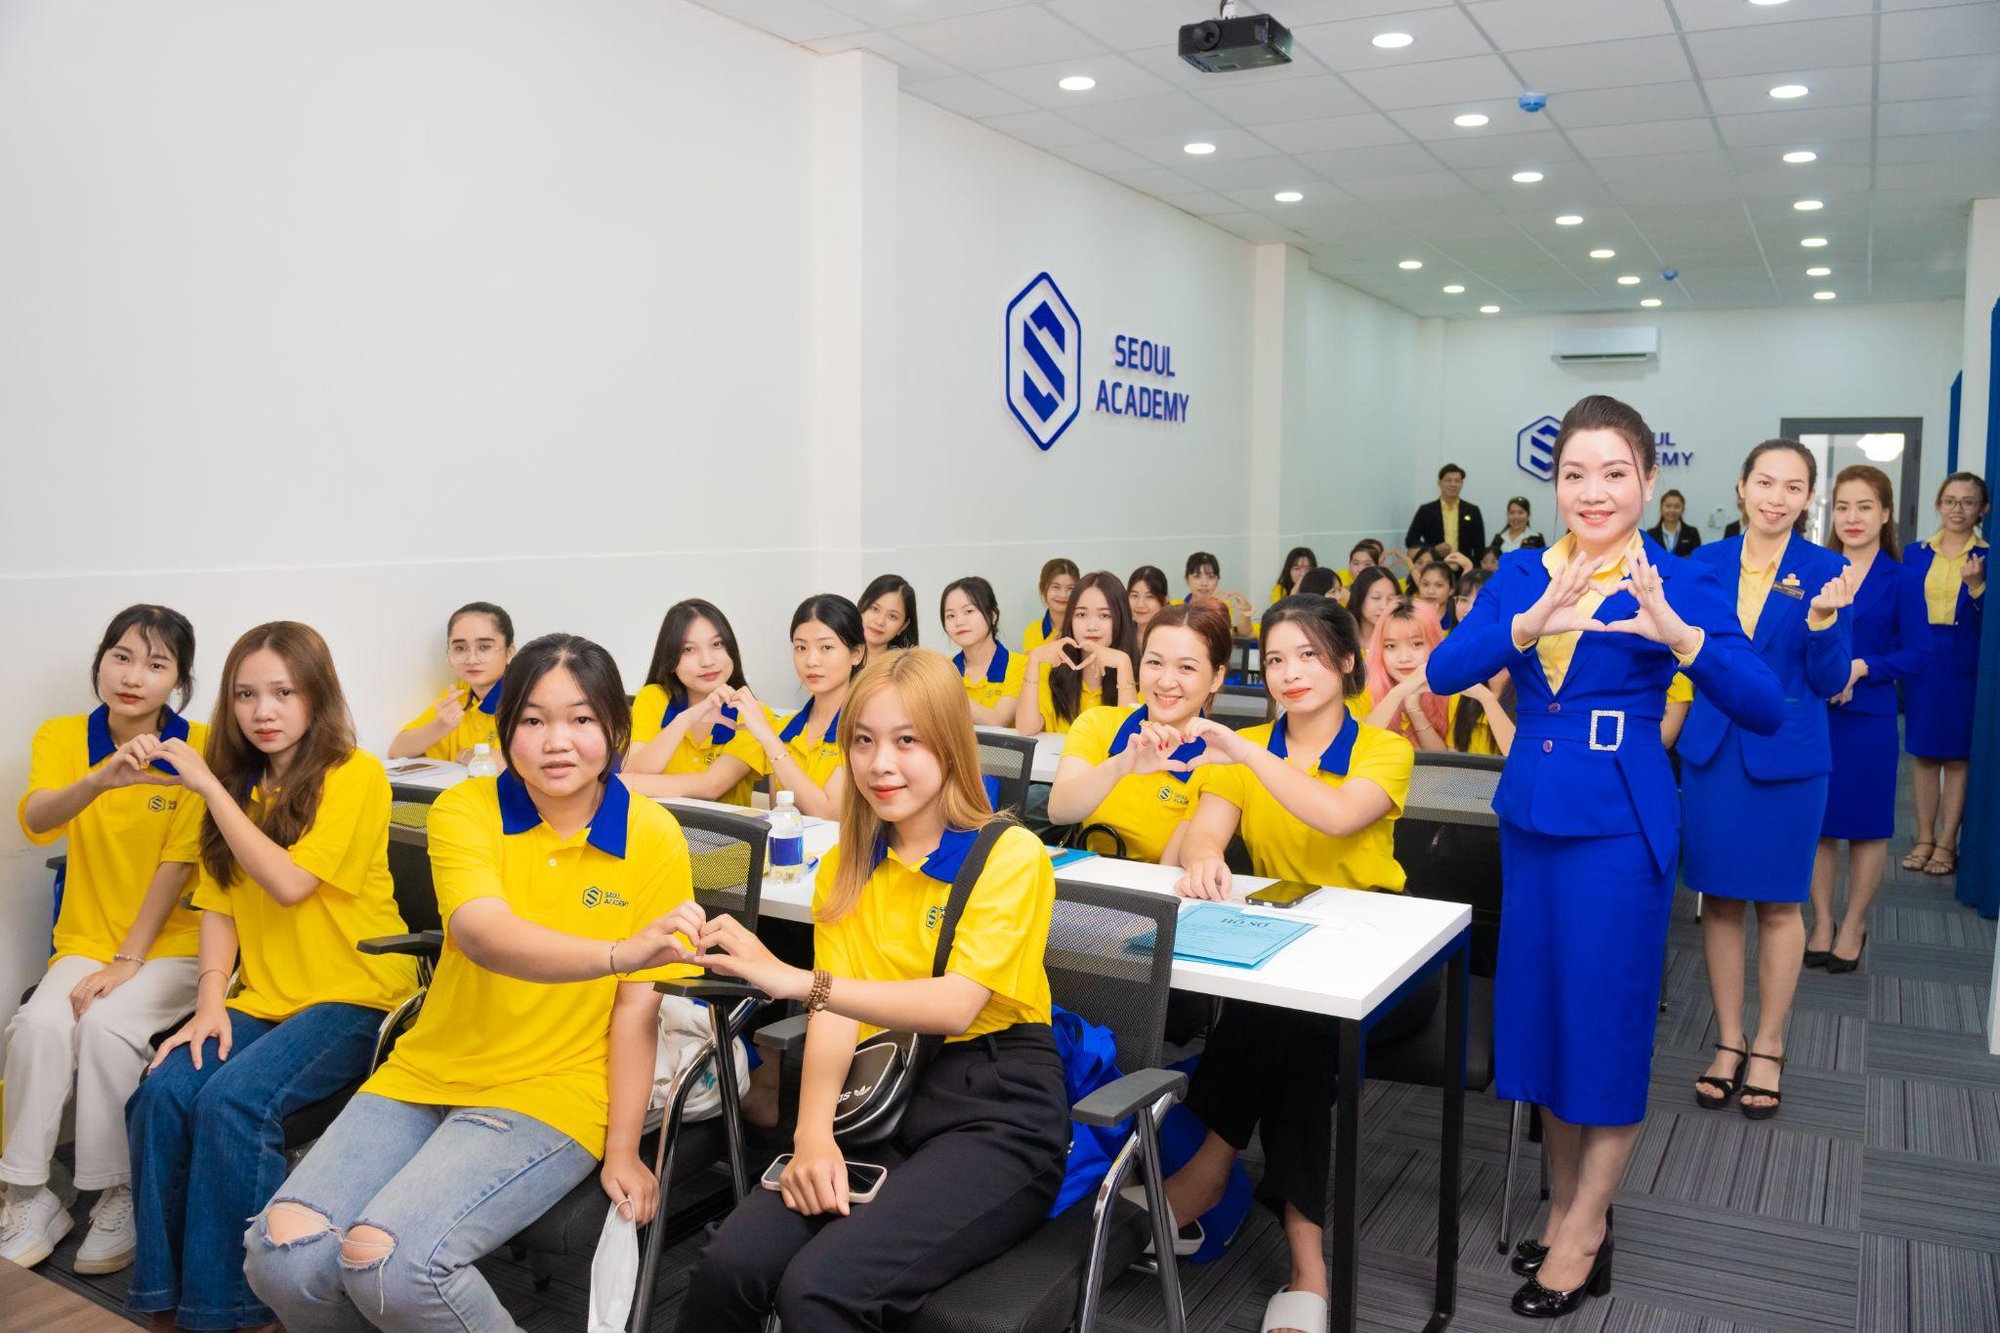 Seoul Academy xây dựng các khóa học theo tiêu chuẩn quốc tế